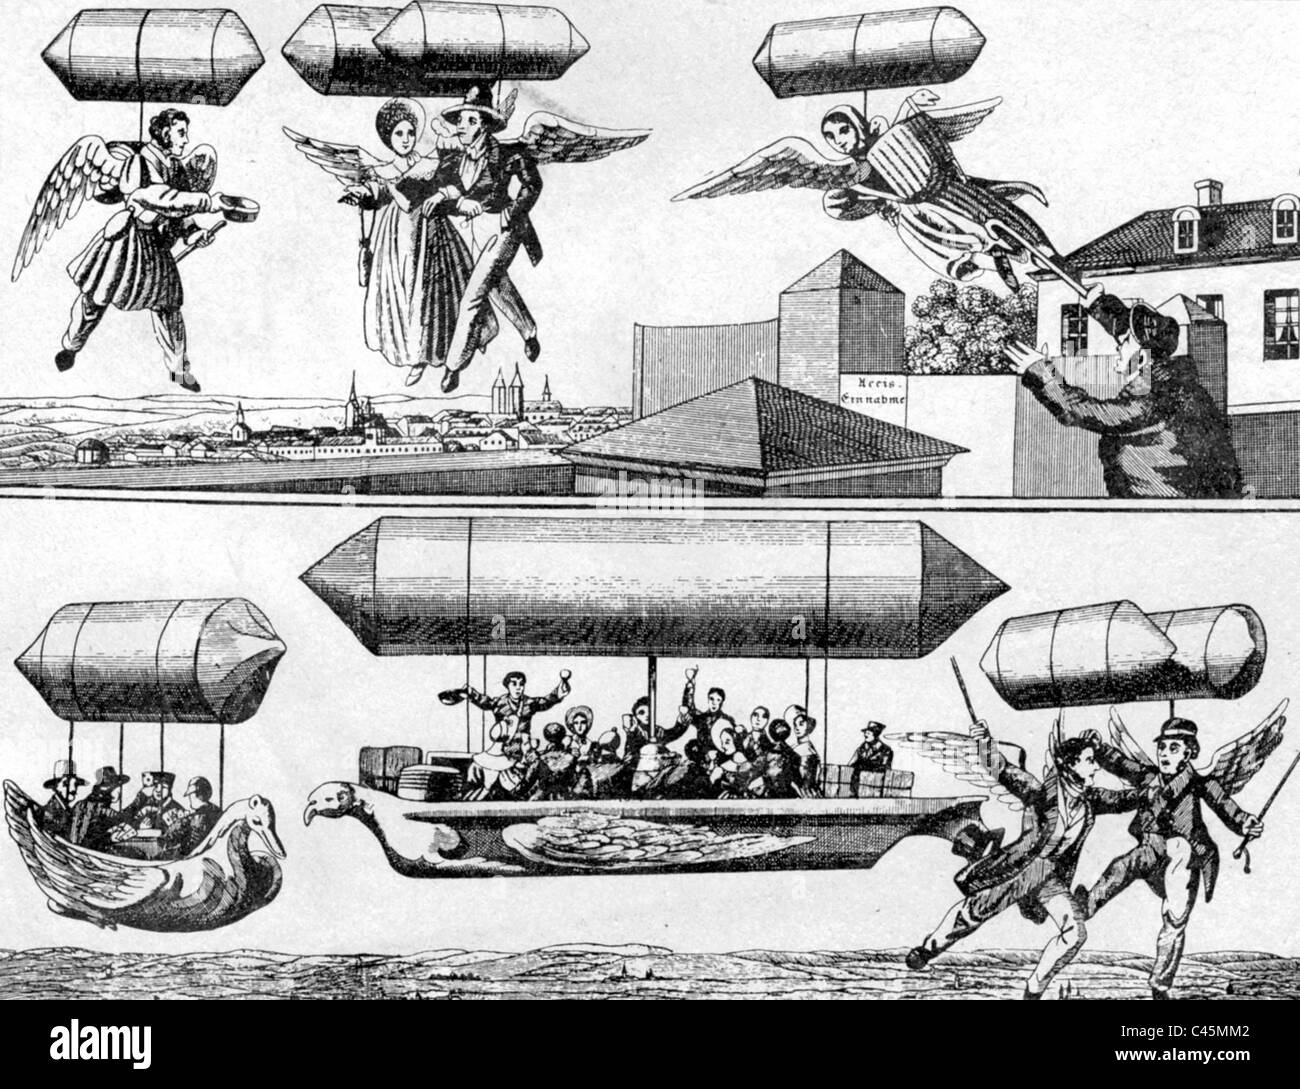 Los dirigibles en caricaturas, alrededor de 1900 Foto de stock